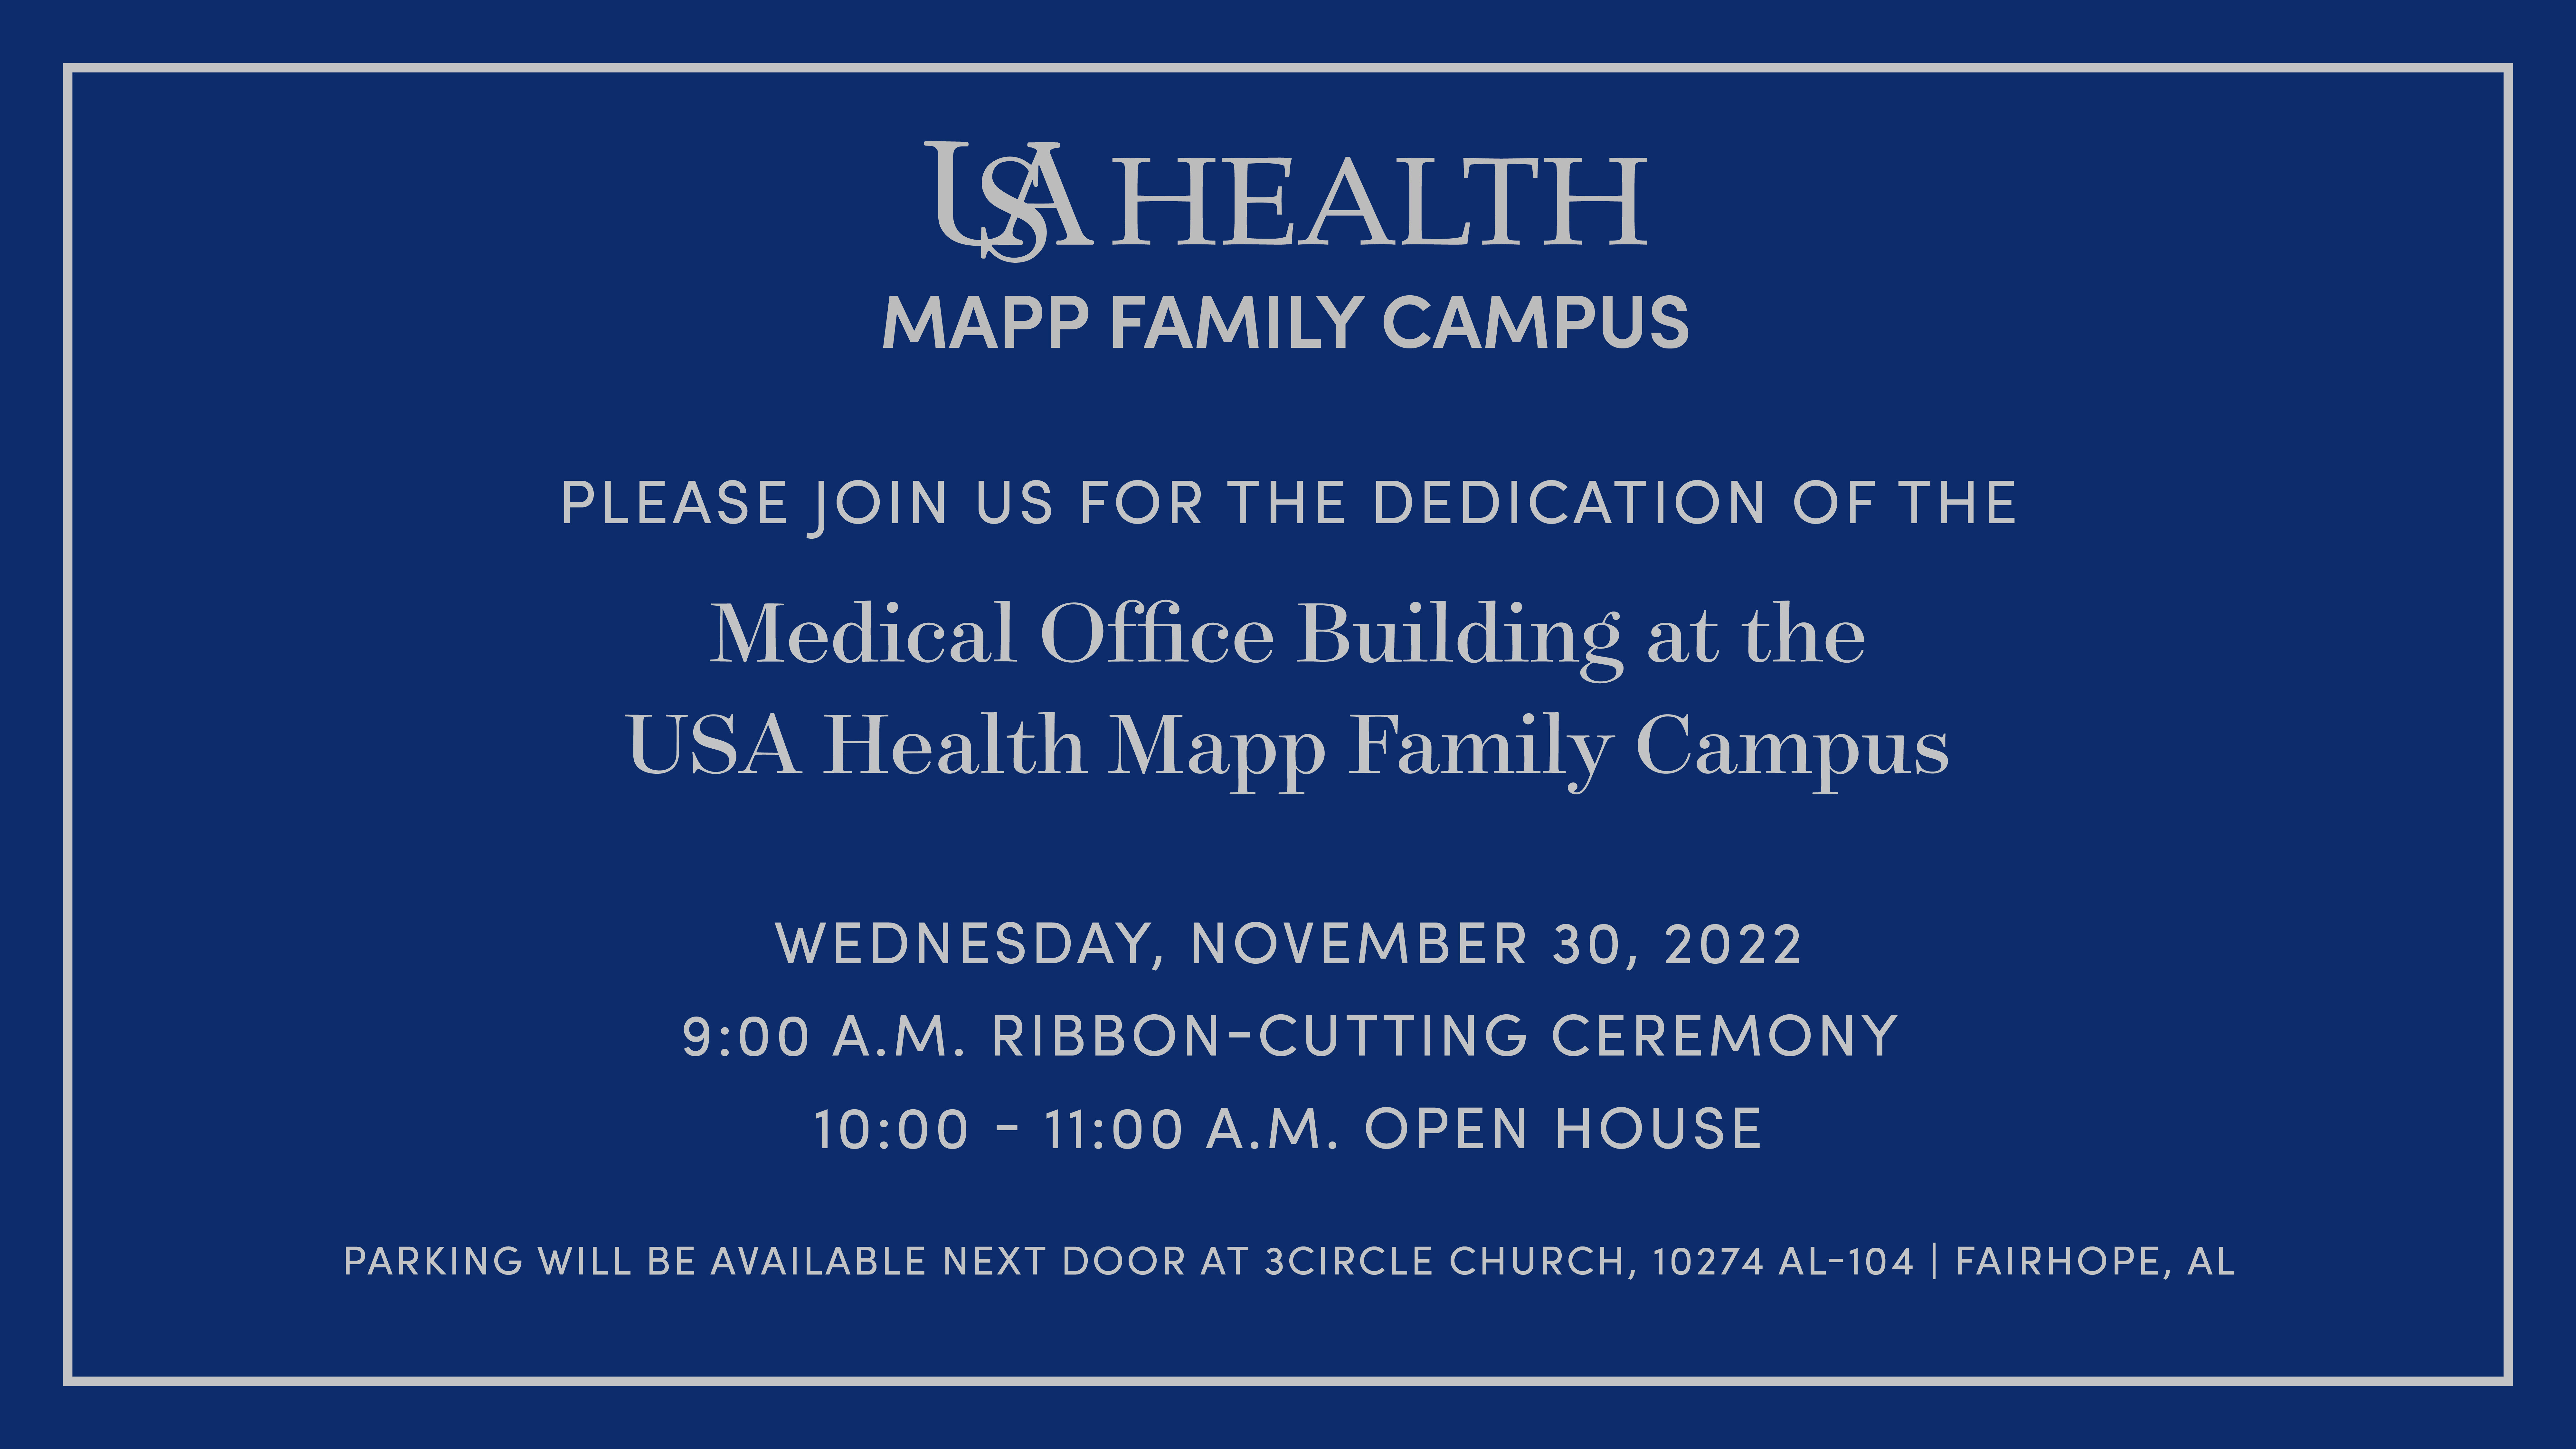 USA Health Mapp Family Campus Dedication